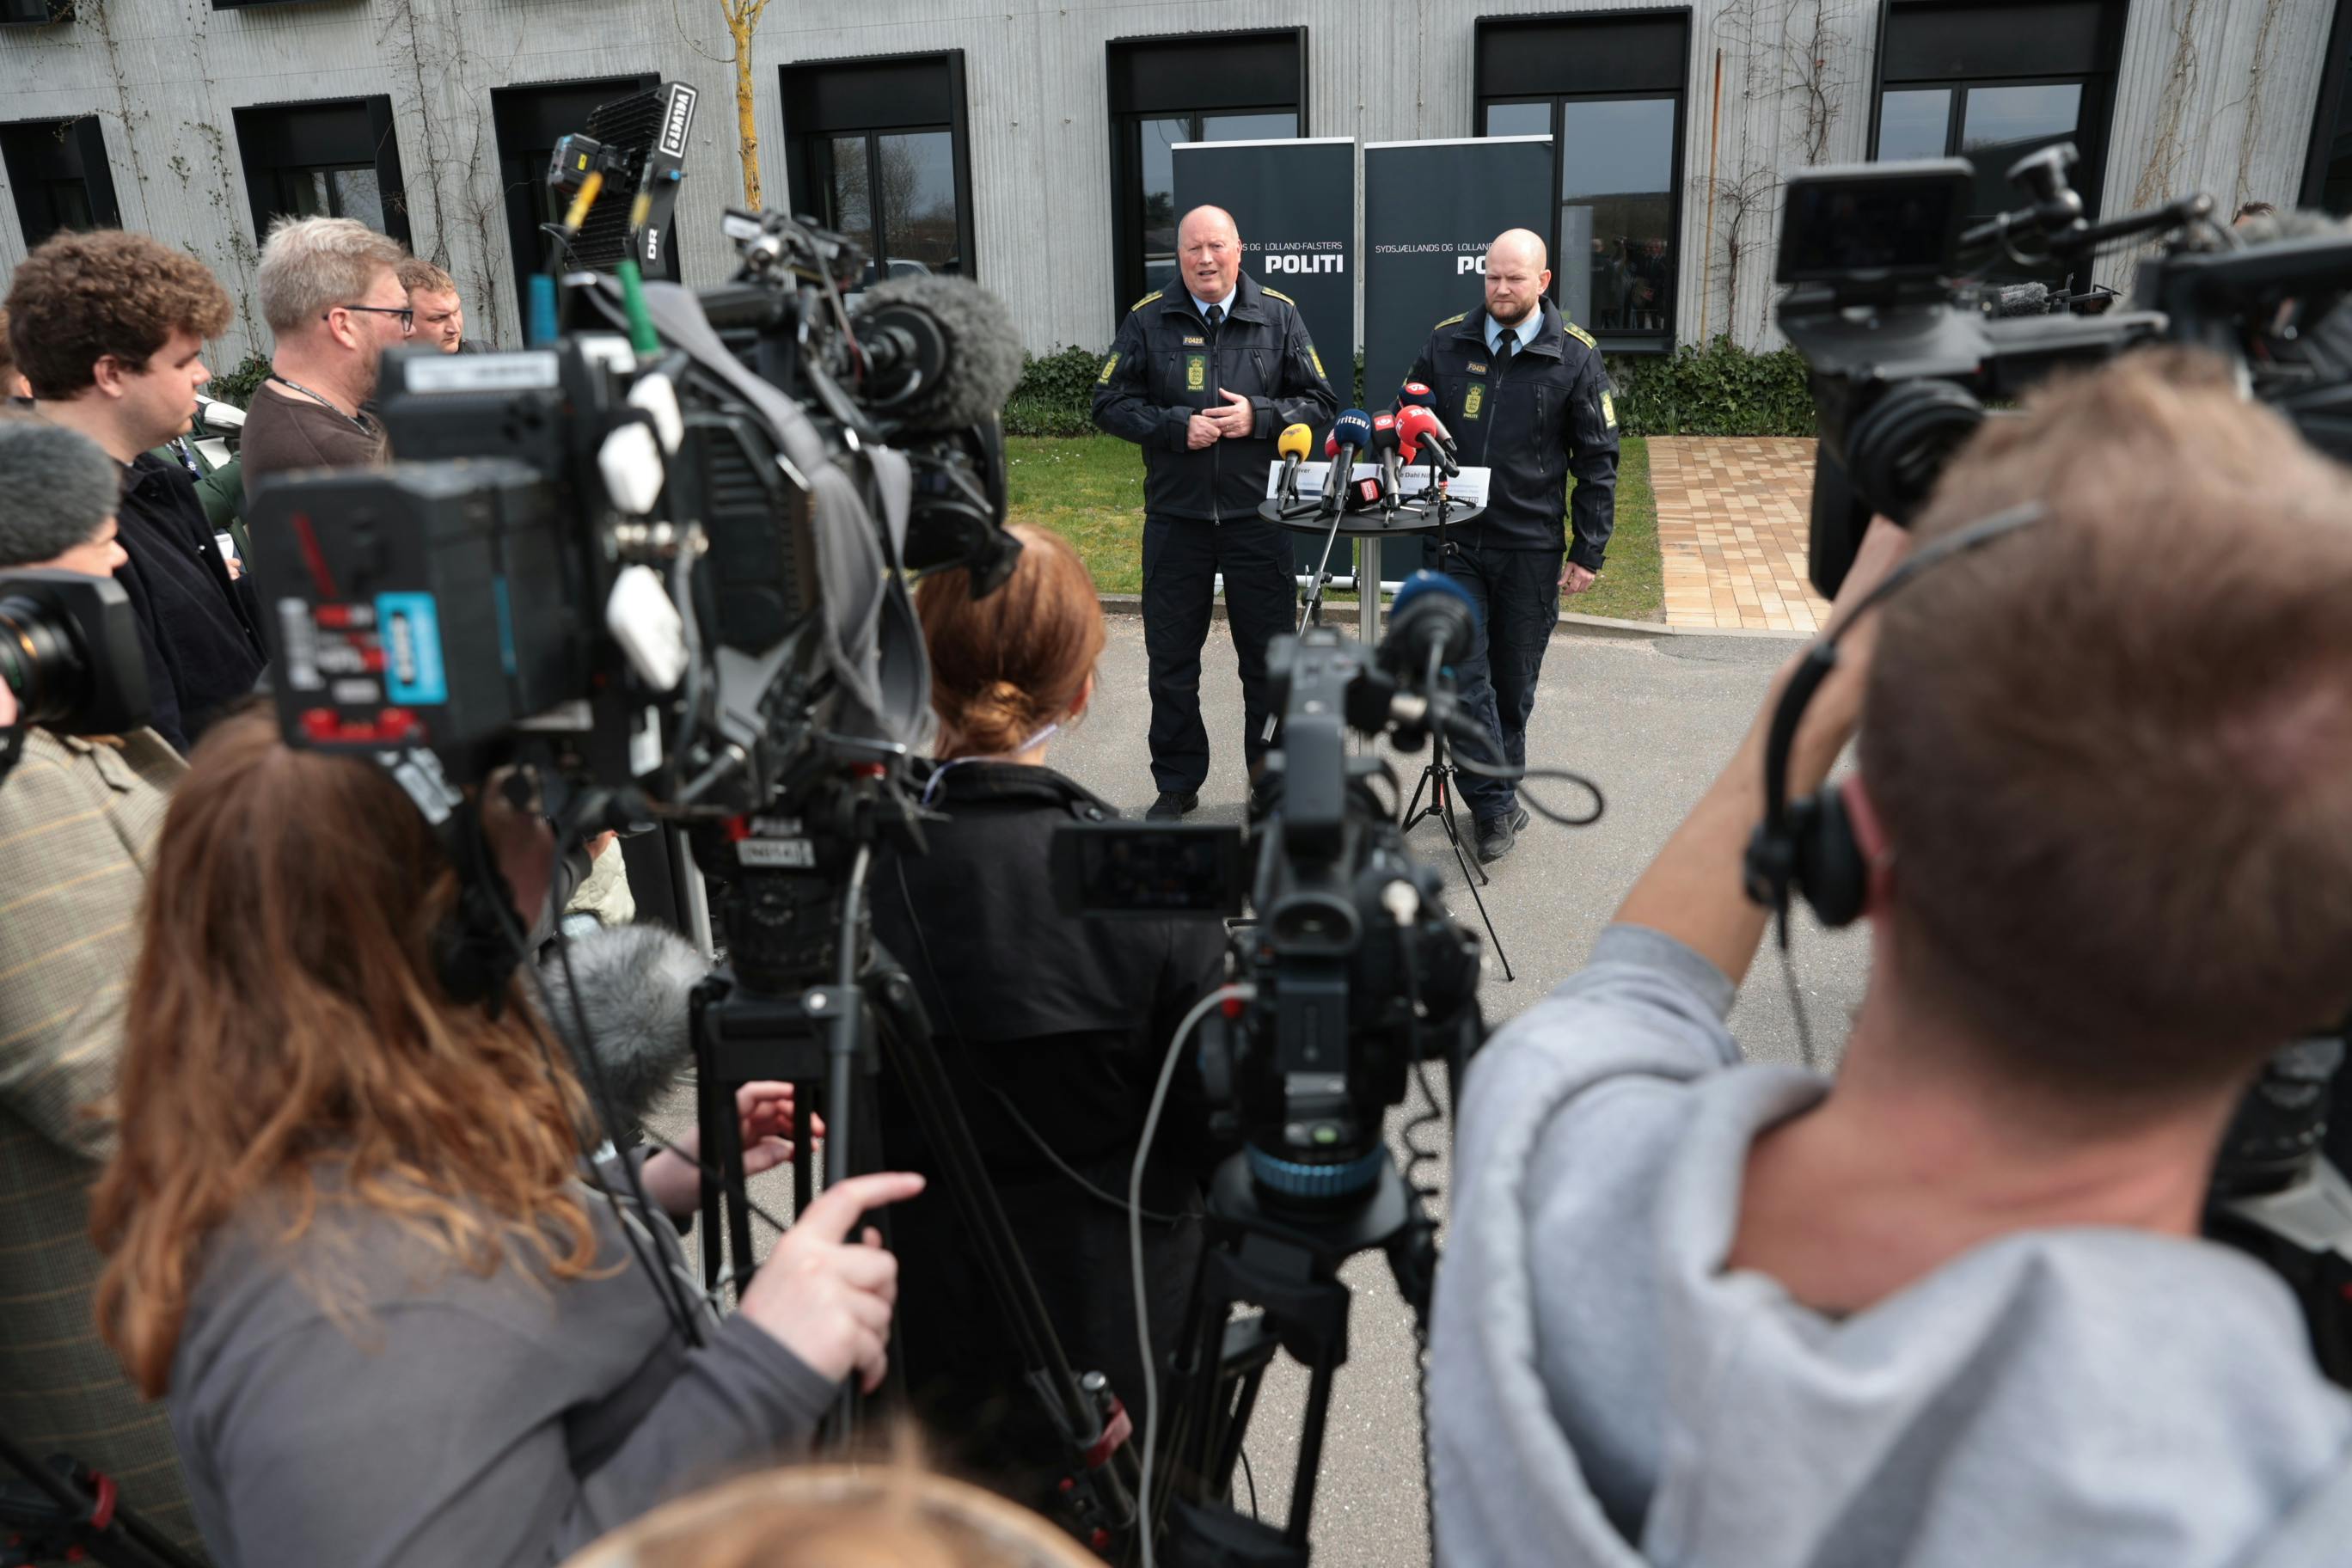 Mere end 25 pressefolk fra Danmark, Norge og Sverige var til stede under pressemødet søndag, hvor politiet kunne fortælle, at pigen var fundet i live.